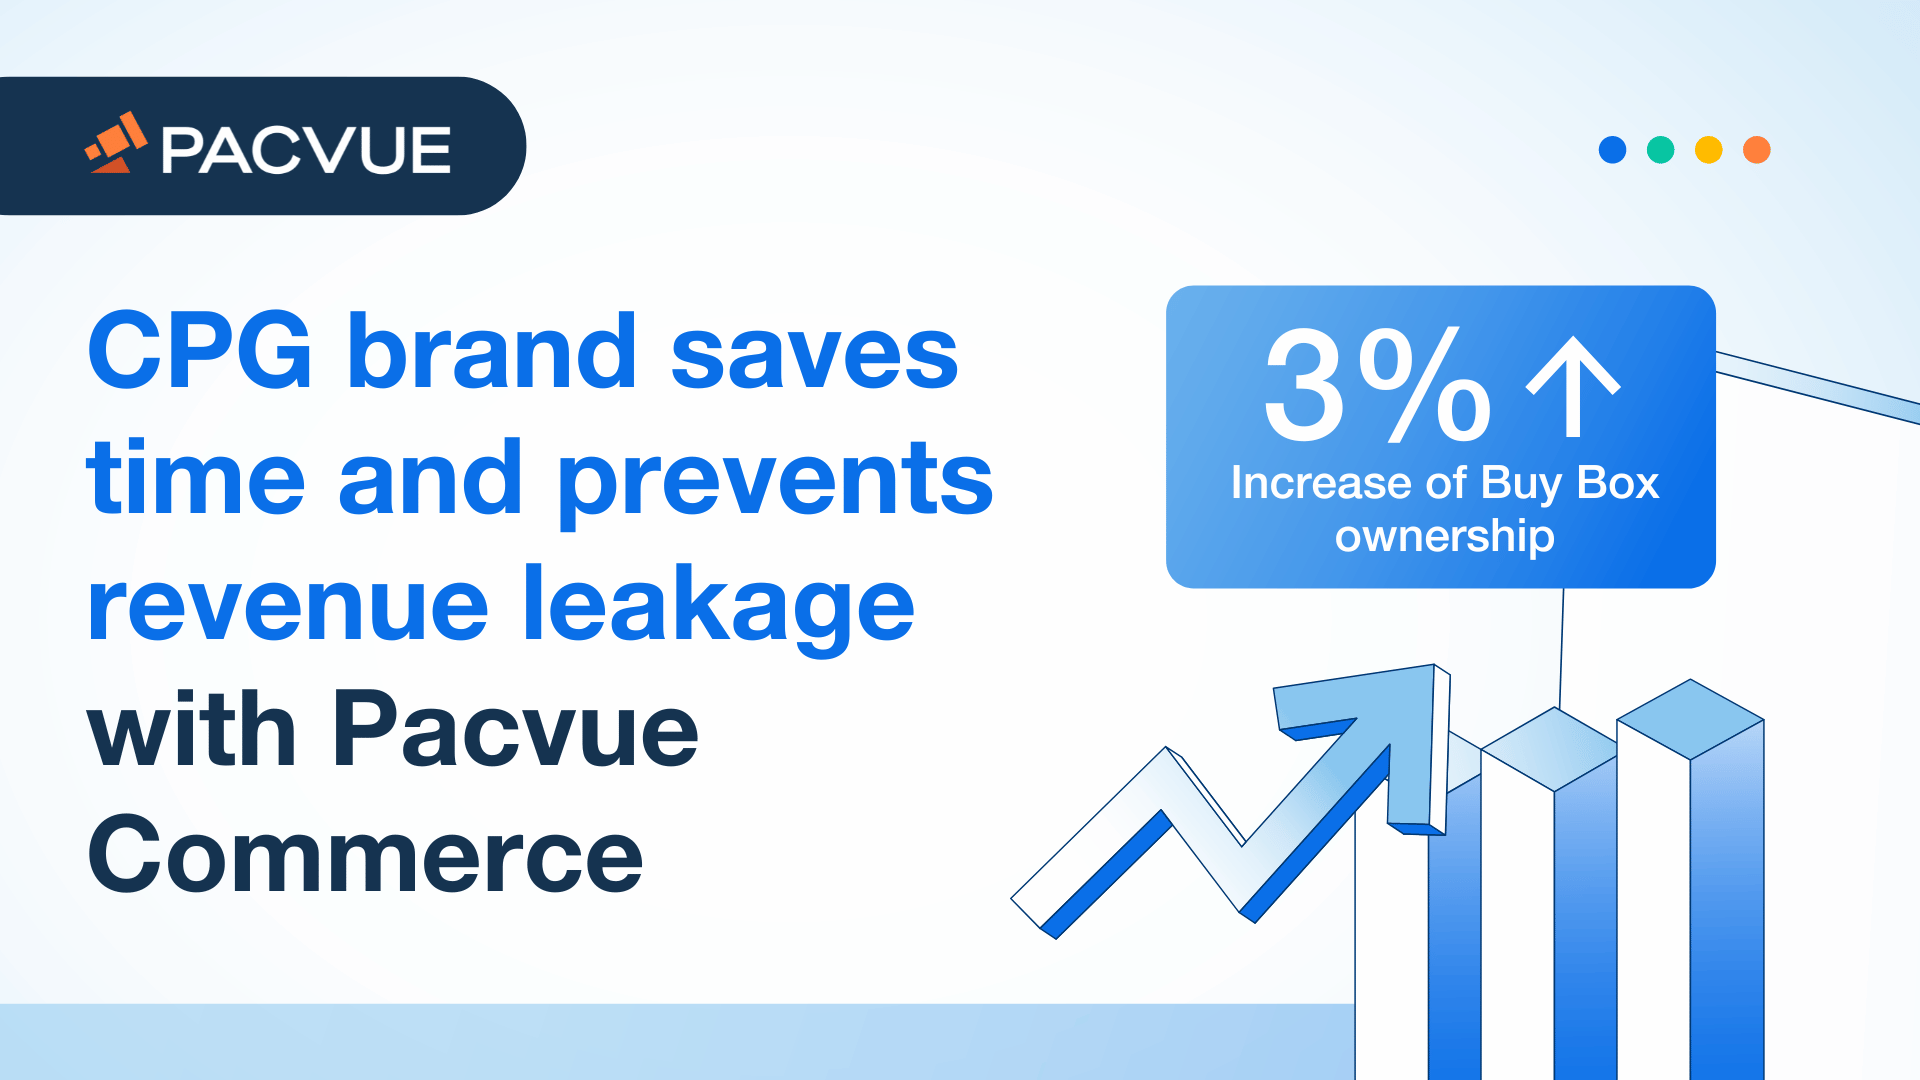 Il marchio di prodotti di largo consumo risparmia tempo e previene le perdite di fatturato con Pacvue Commerce